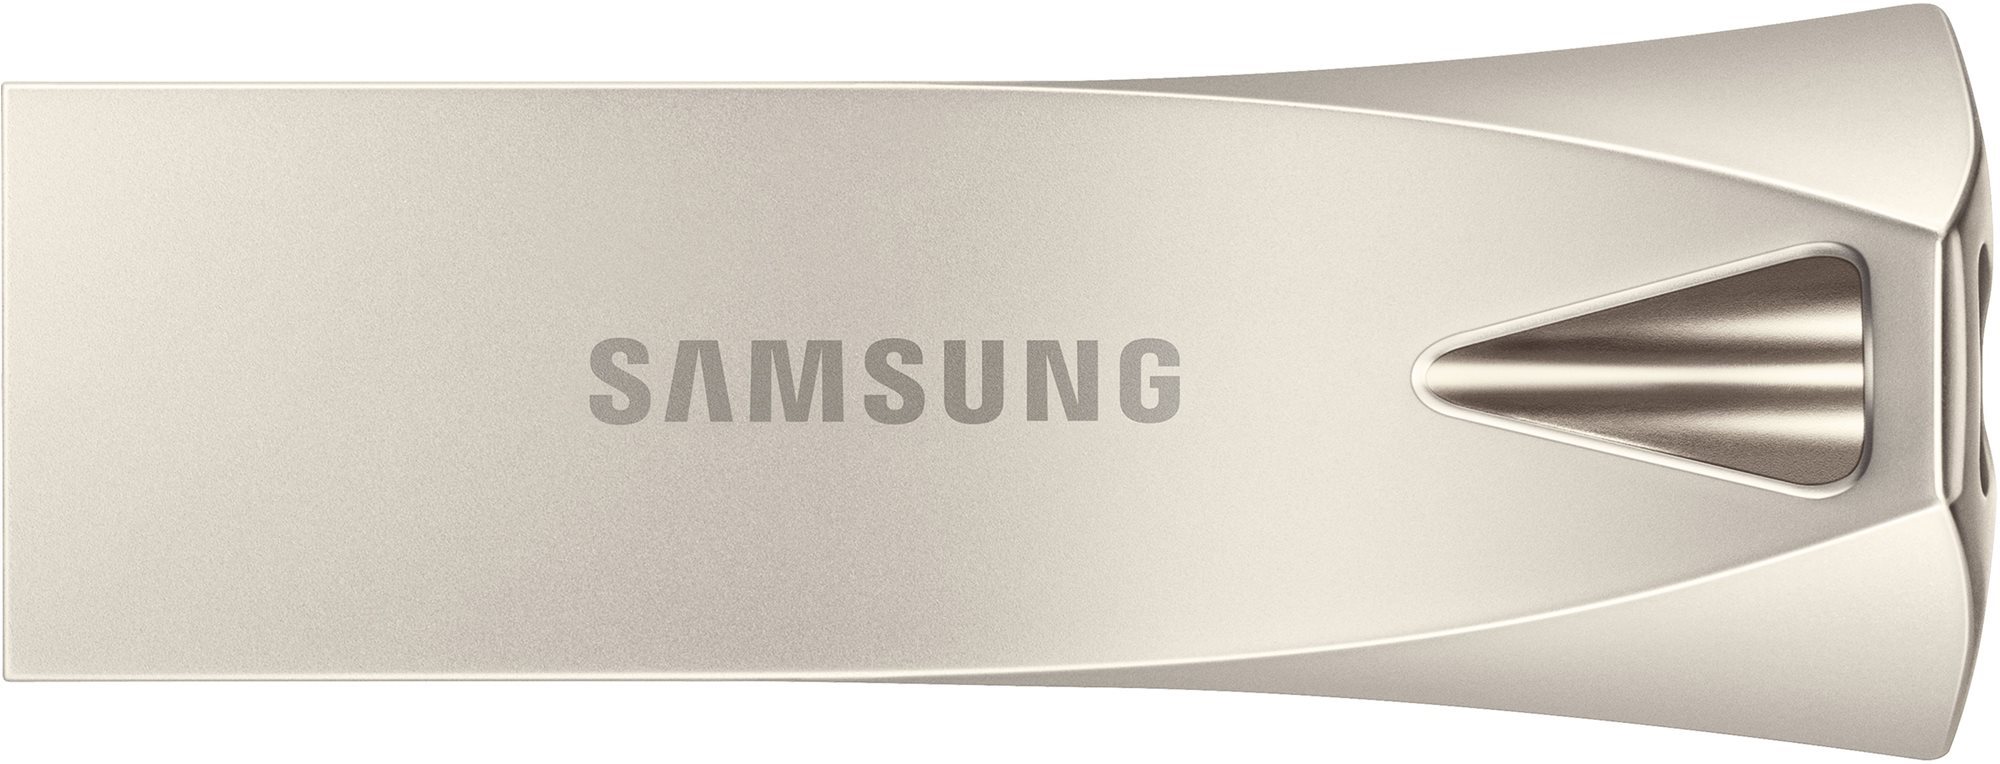 Samsung USB 3.1 128GB Bar Plus Champagne Silver